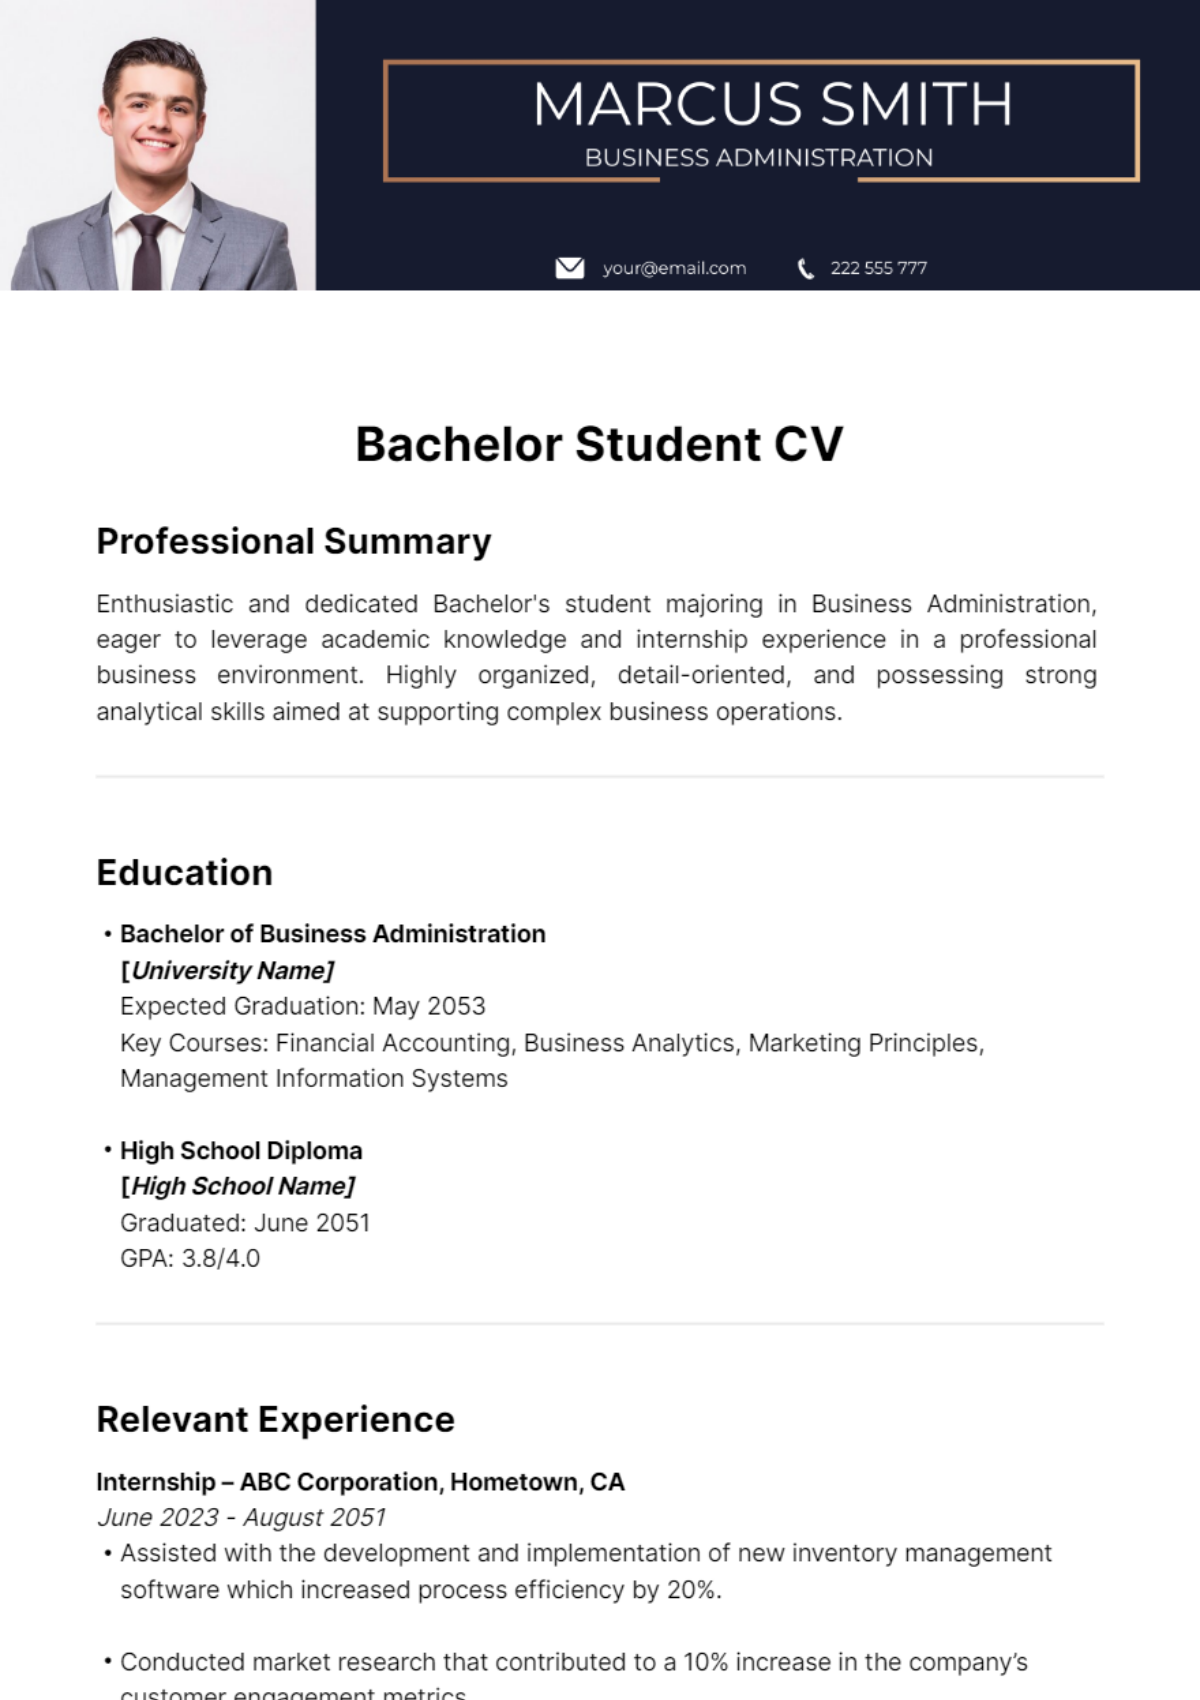 Bachelor Student CV Template